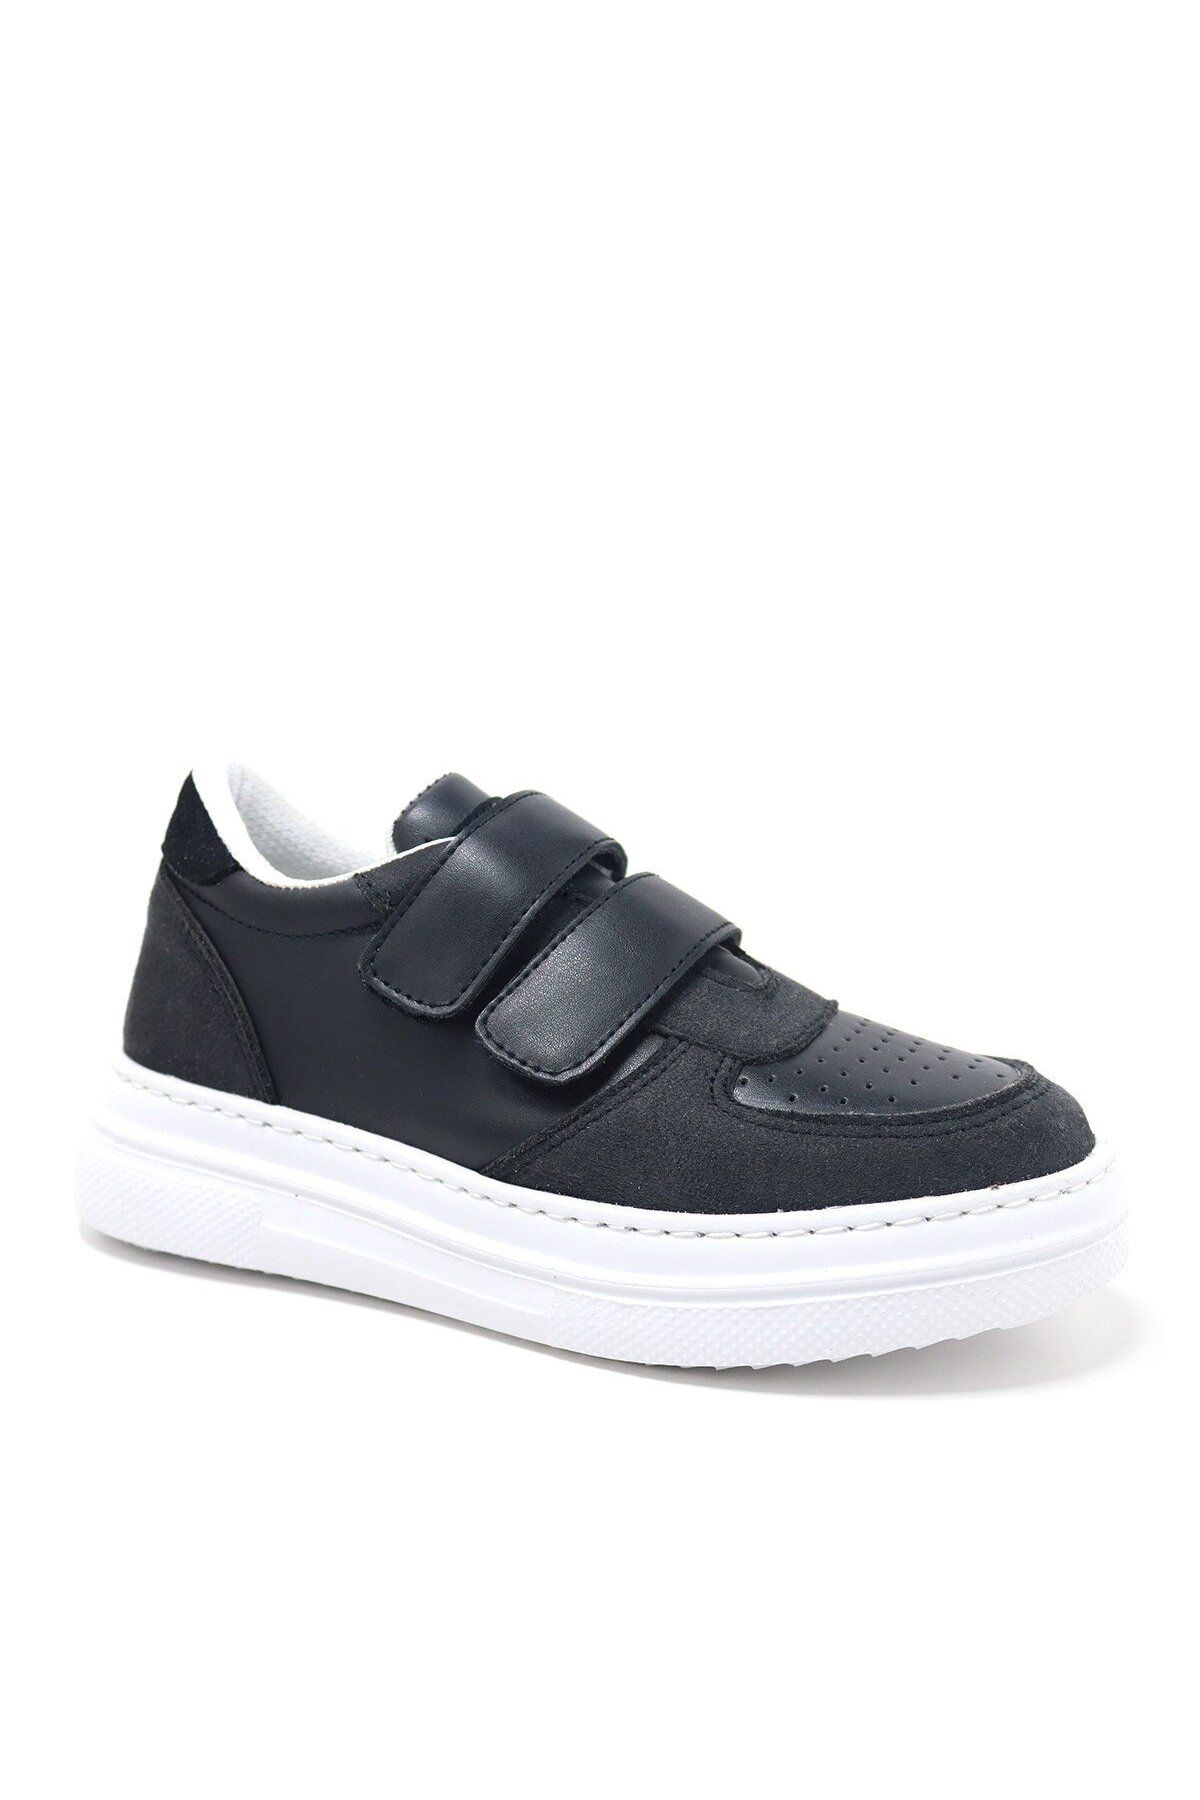 Artico Hellsa Siyah Beyaz Cırtlı Çocuk Spor Ayakkabı